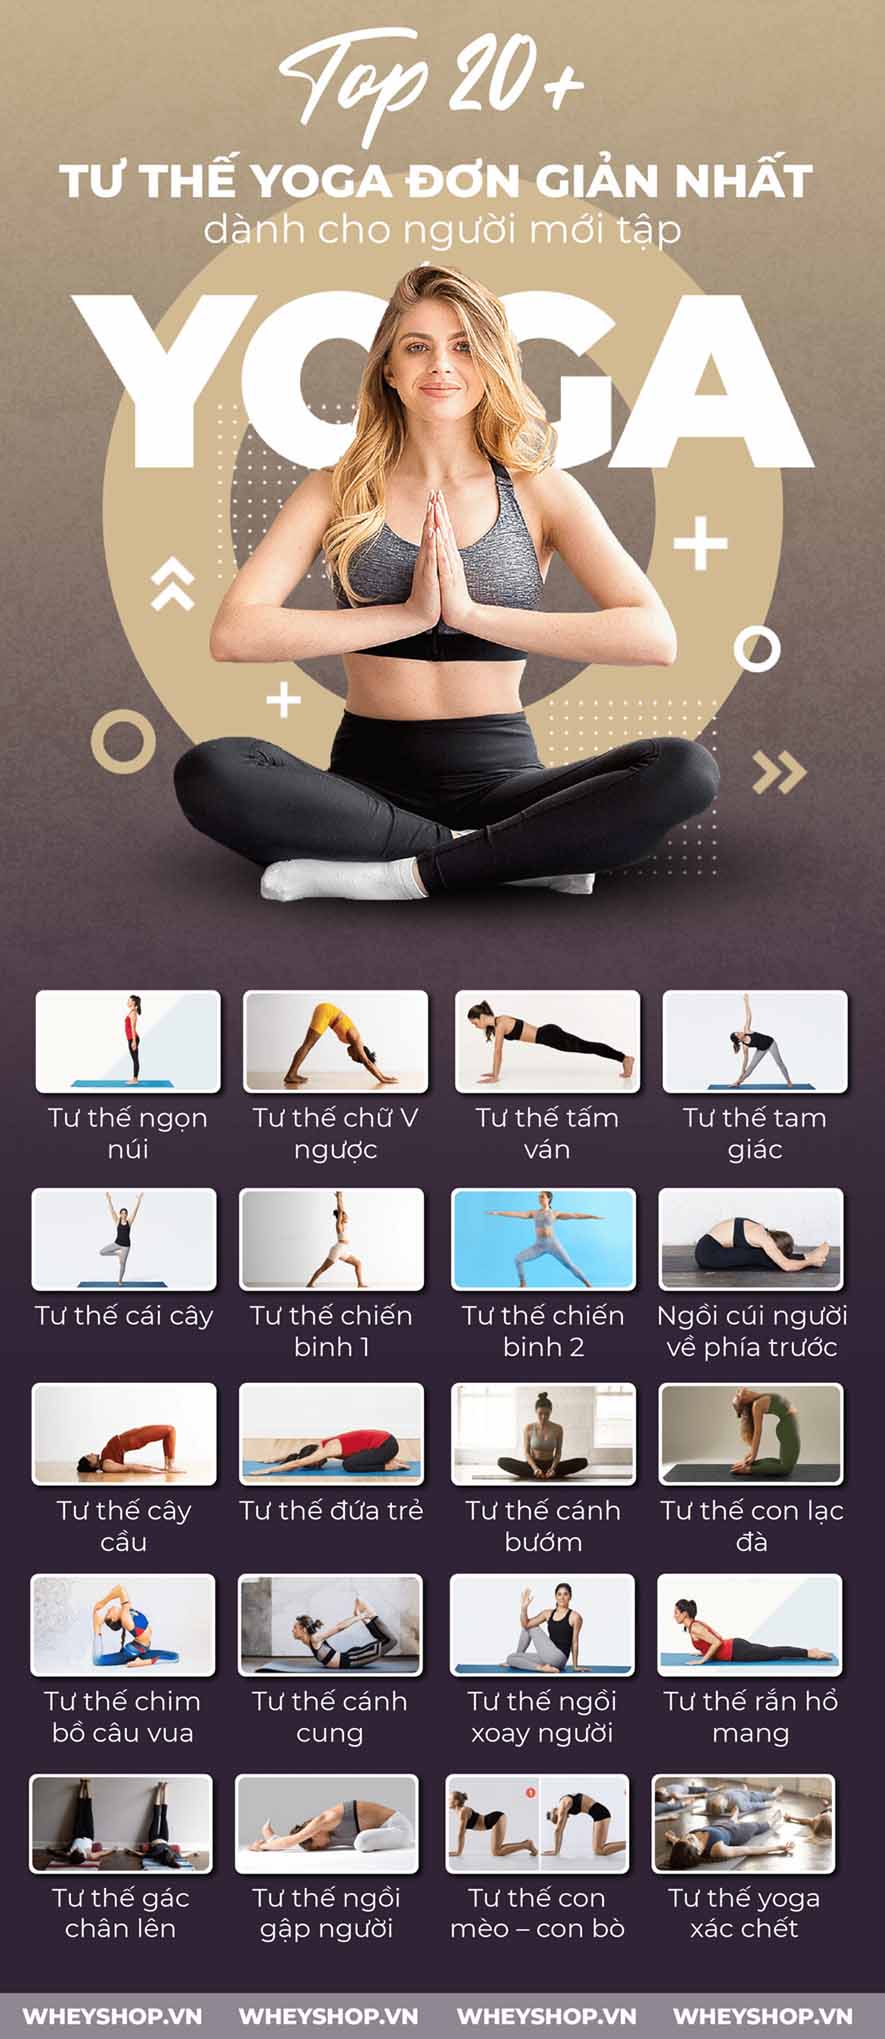 20+ tư thế yoga đơn giản nhất dành cho người mới tập sau đây chắc chắn sẽ giúp sức khoẻ của bạn thay đổi đáng kể. Cùng WheyShop tìm hiểu 